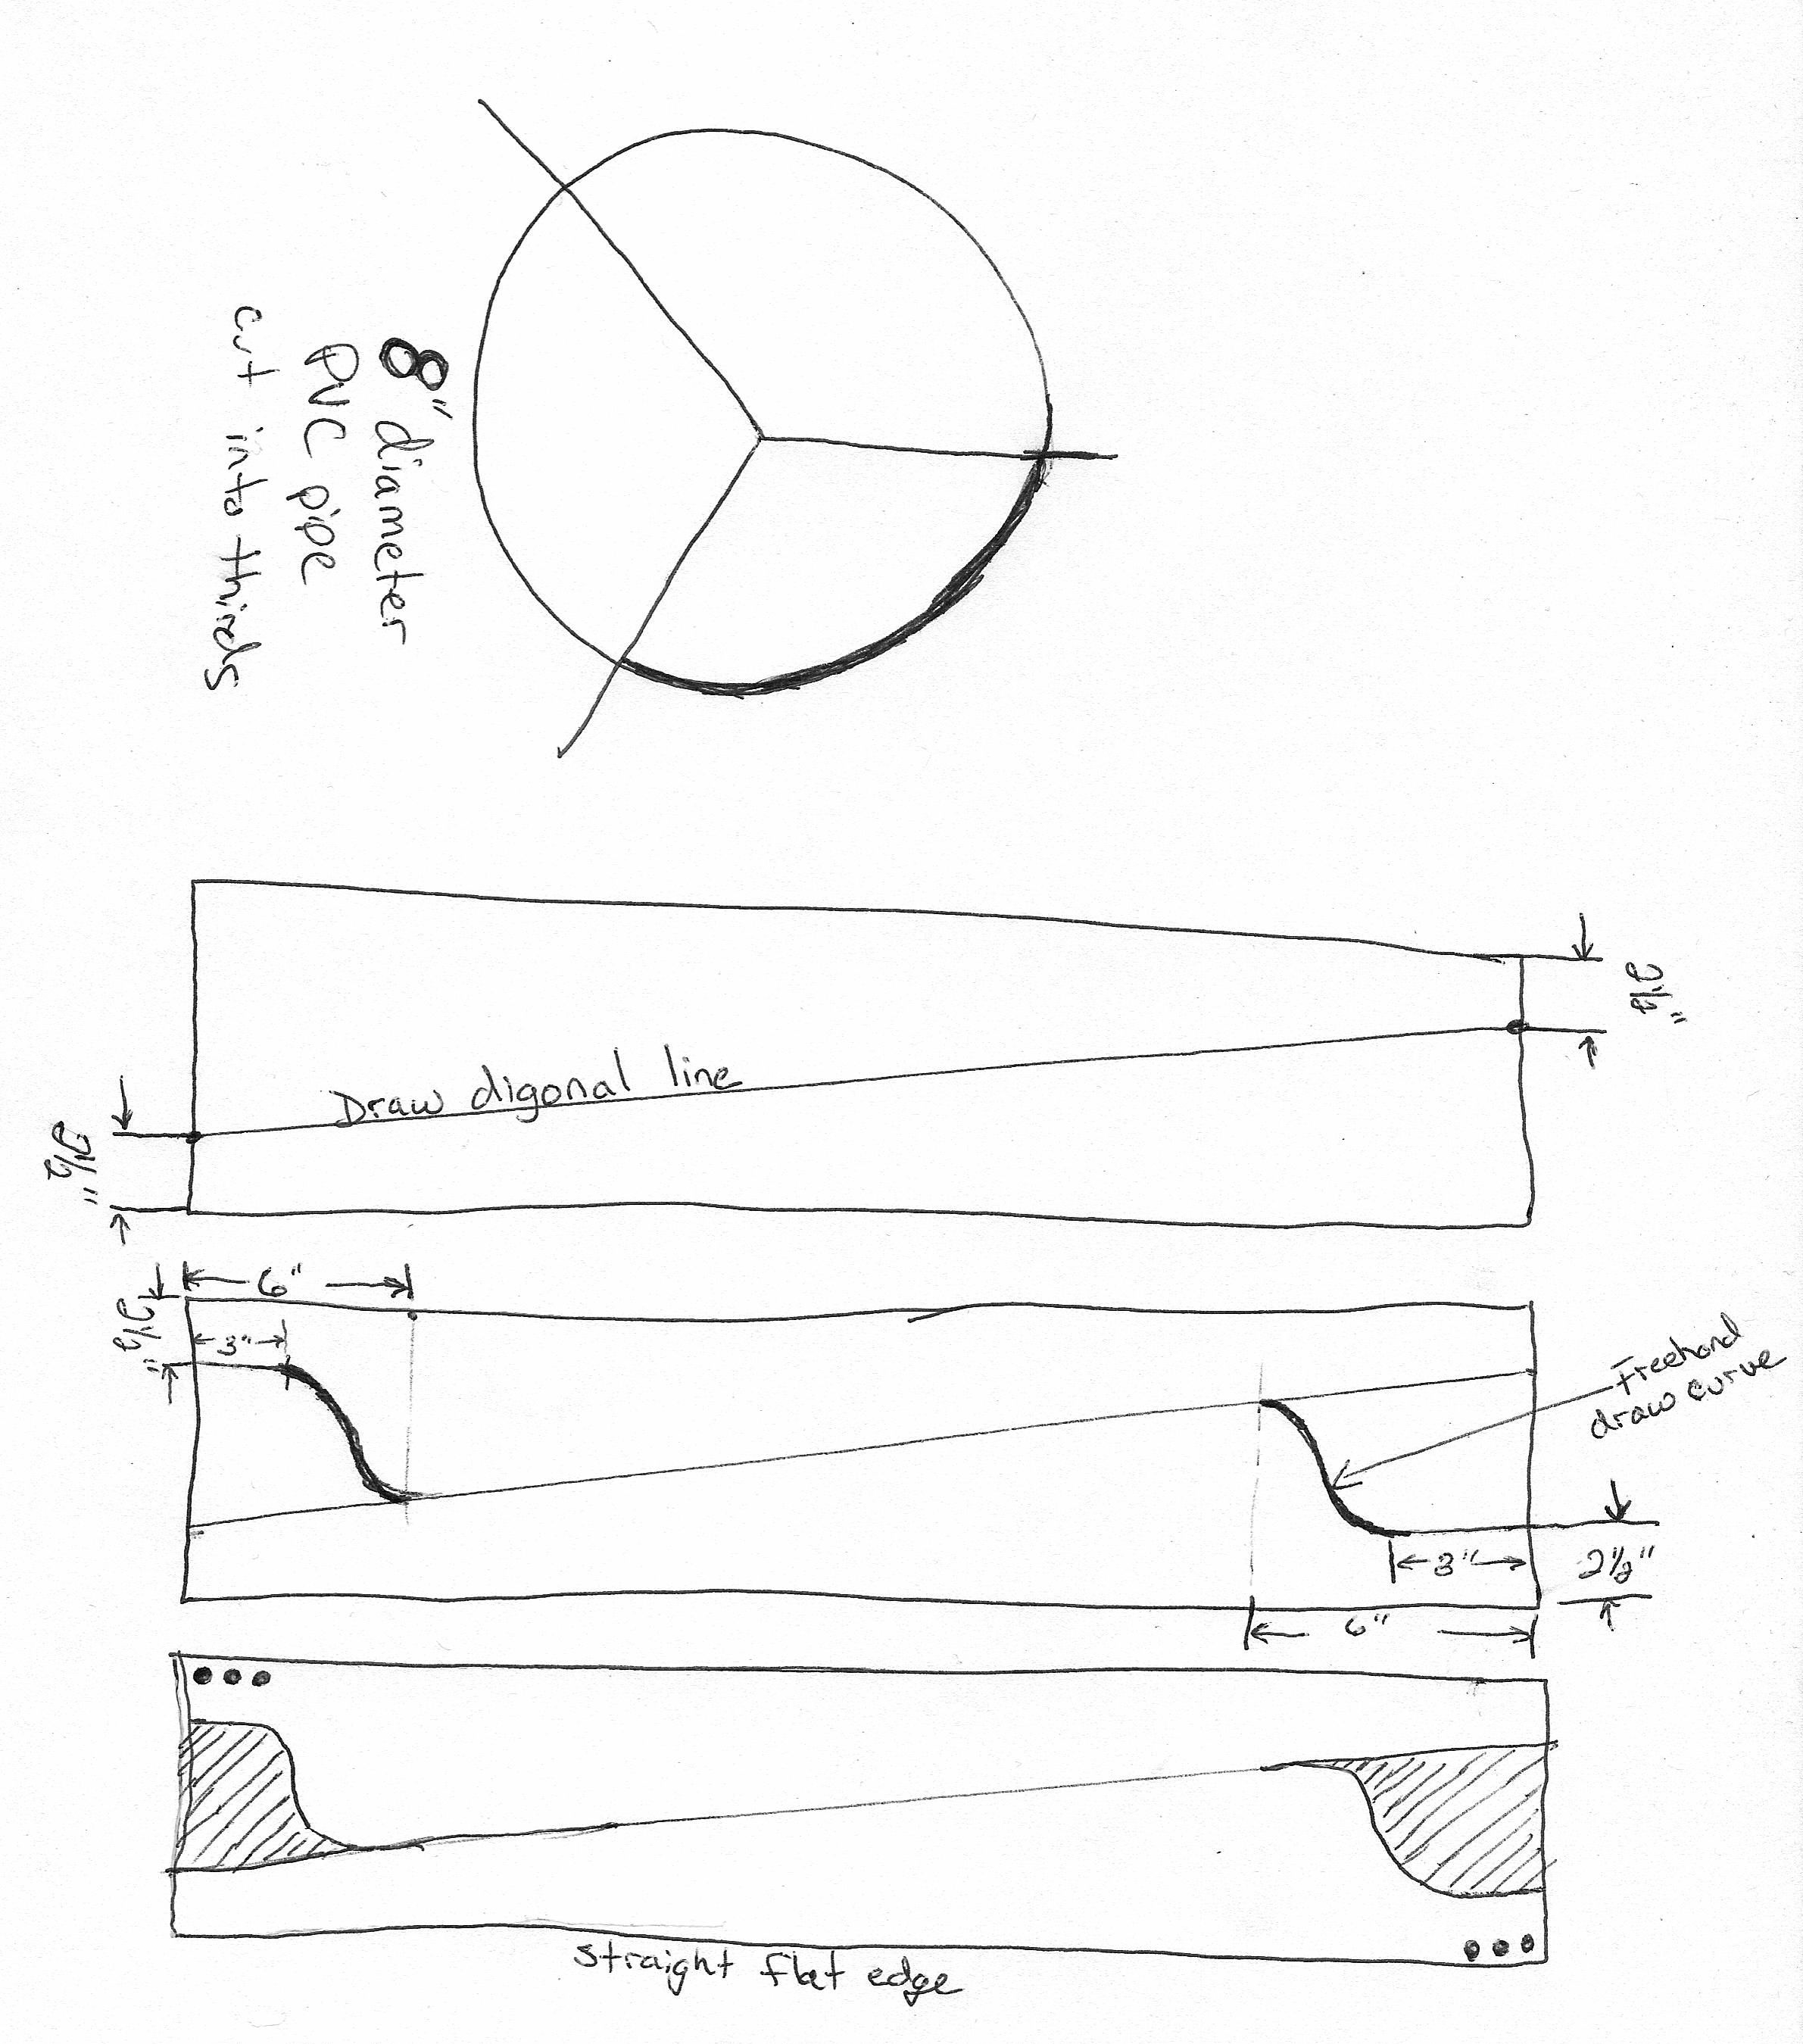  blade design notes in PDF format found here: Wind Turbine Blade Design